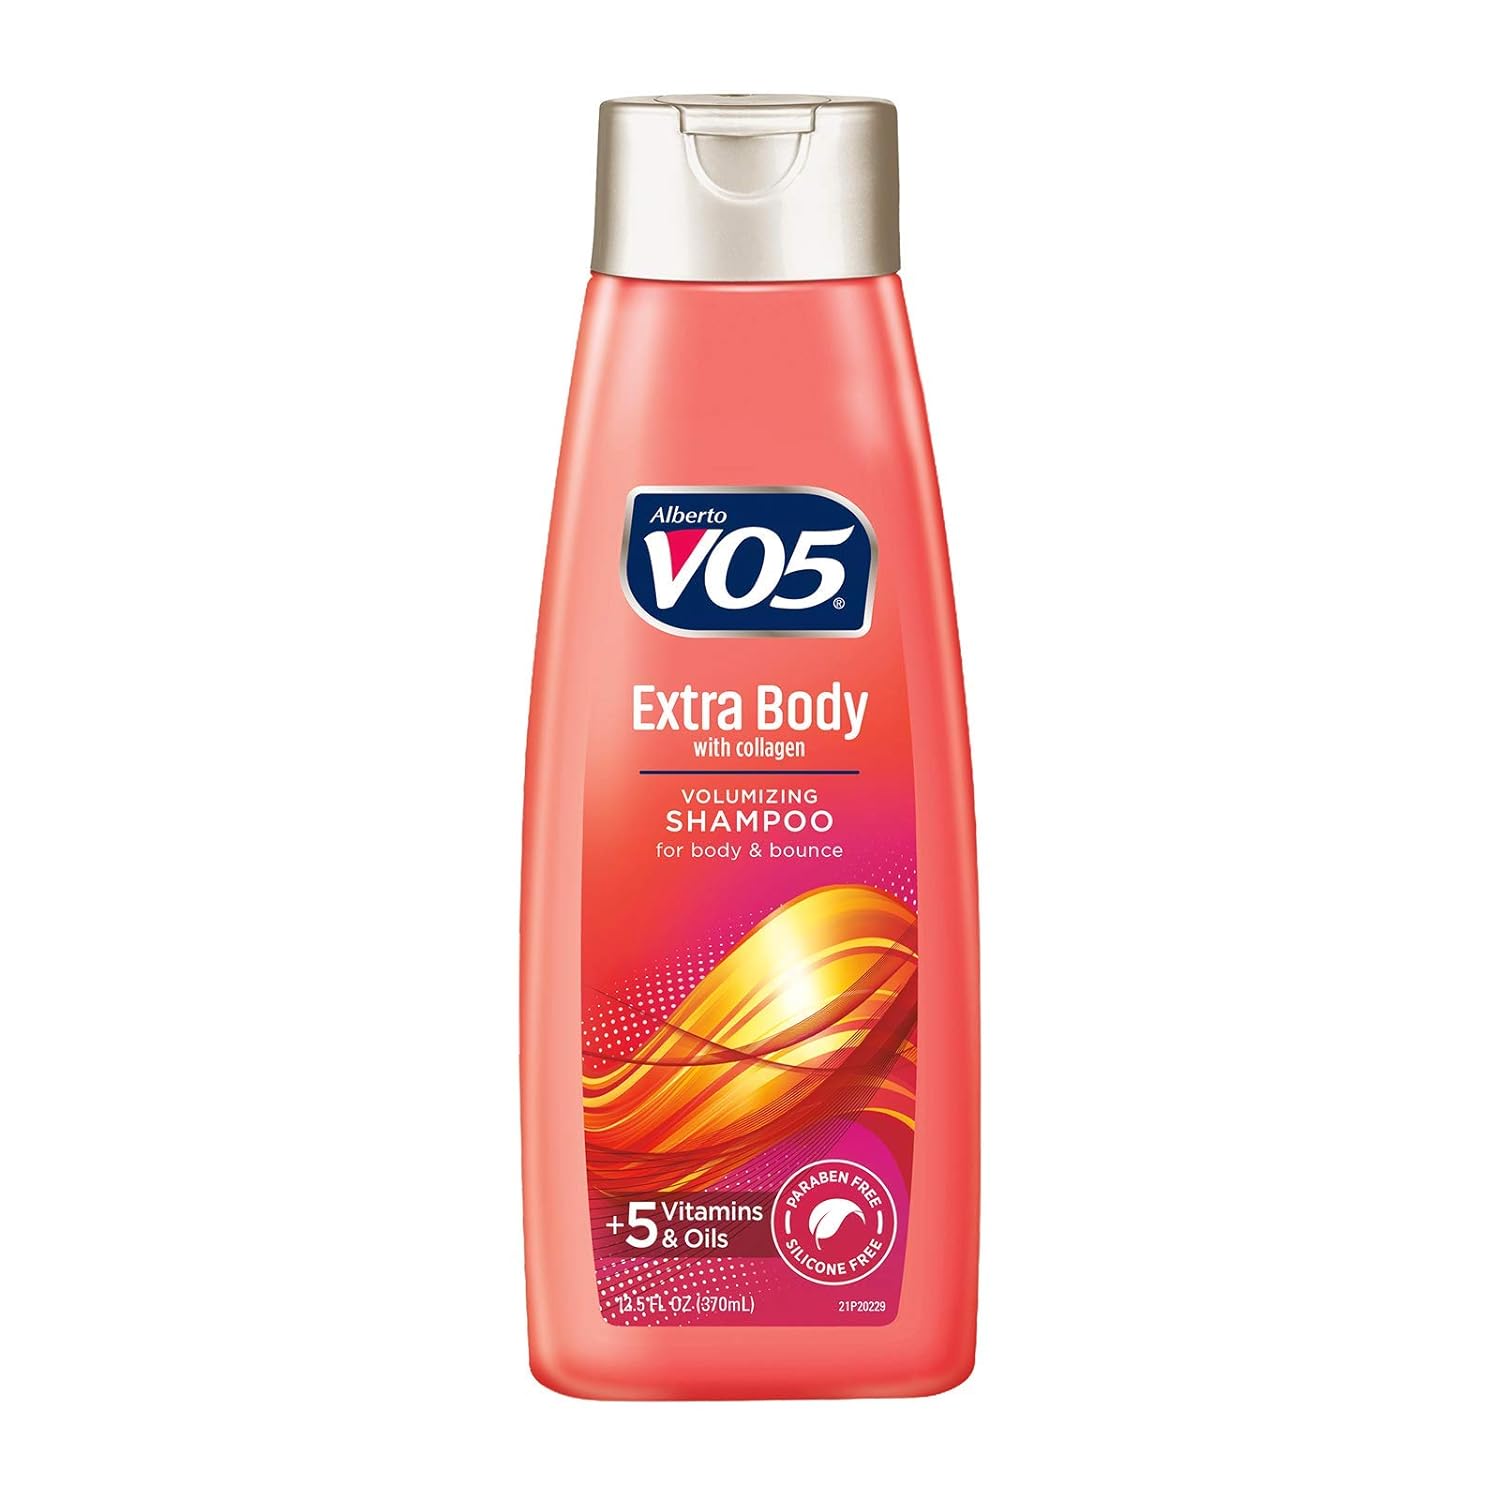 VO5 Extra Body Volumizing Shampoo - 12.5oz/6pk